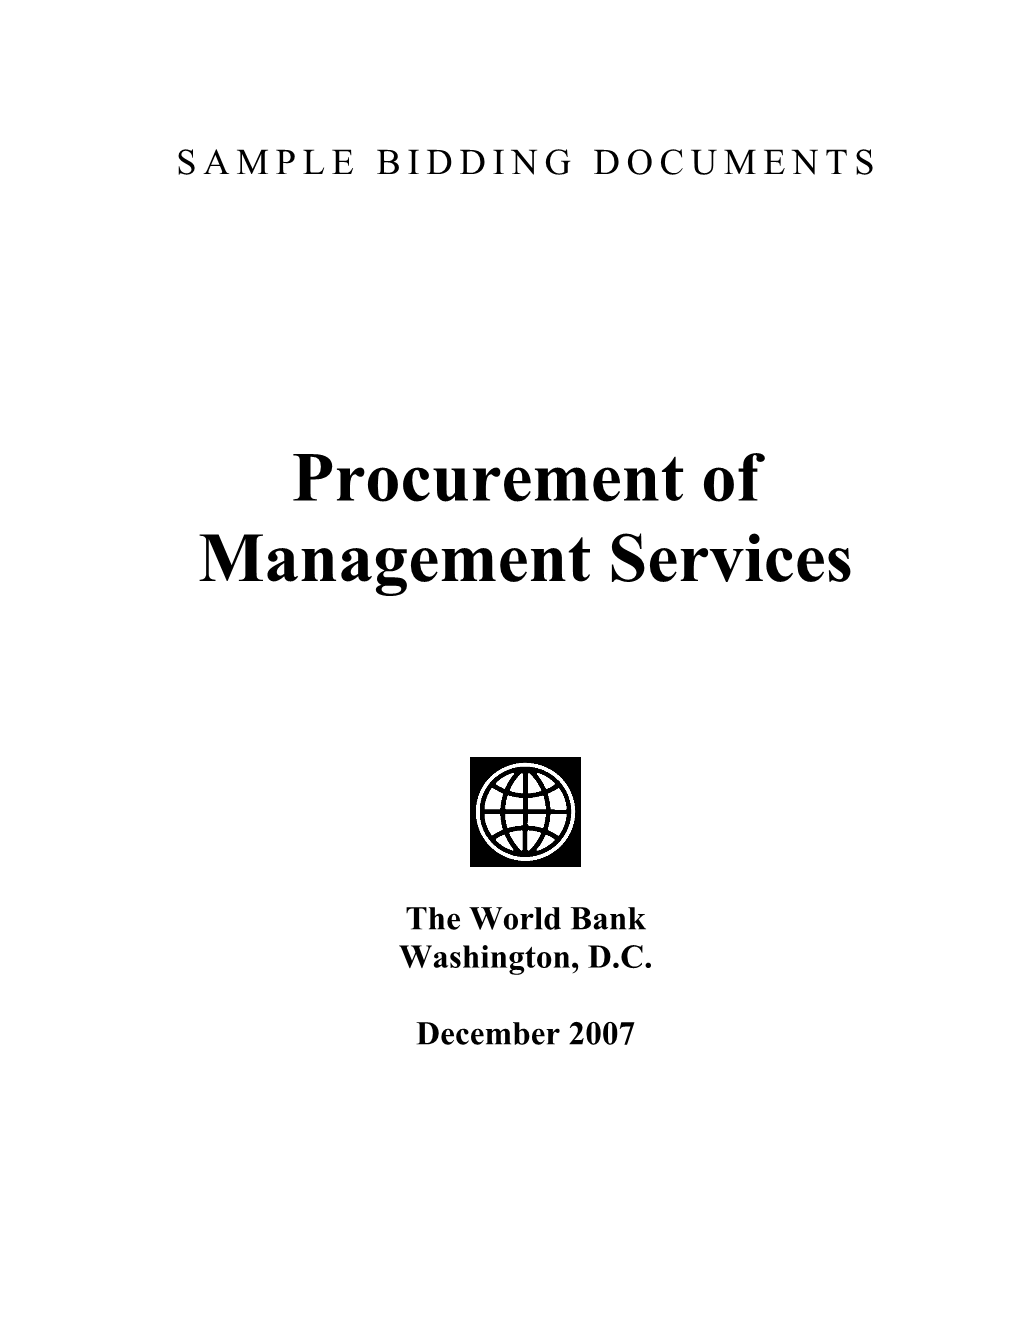 Procurement of Management Services